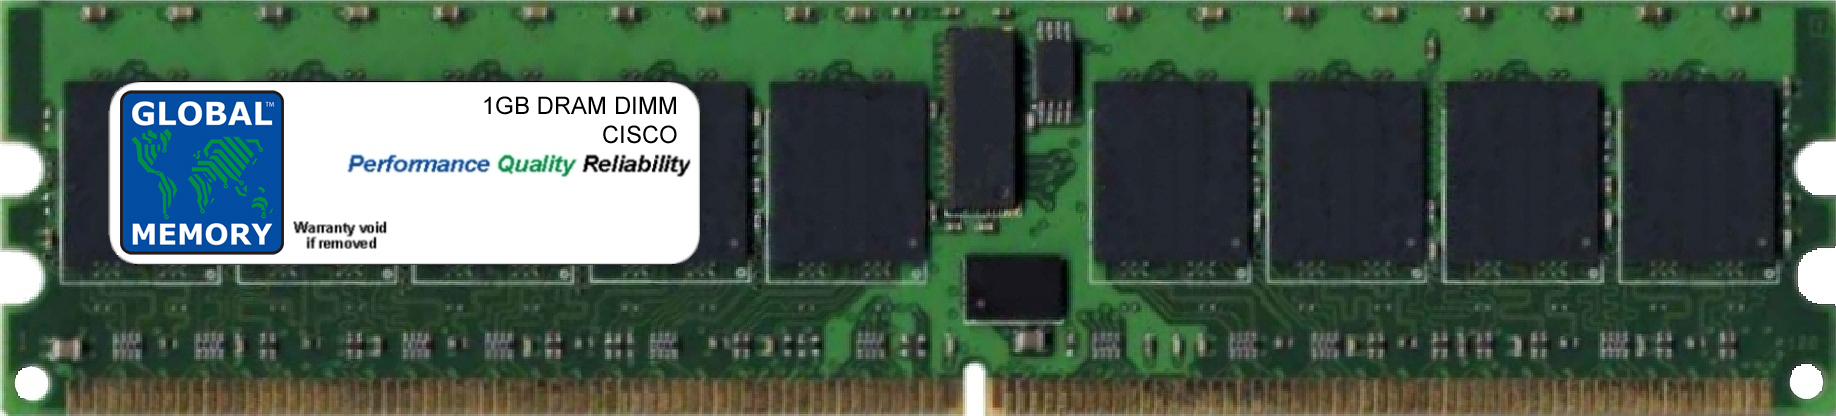 1GB DRAM DIMM MEMORY RAM FOR CISCO MEDIA CONVERGENCE SERVER MCS 7835-H1 (MEM-7835-H1-1GB) - Click Image to Close